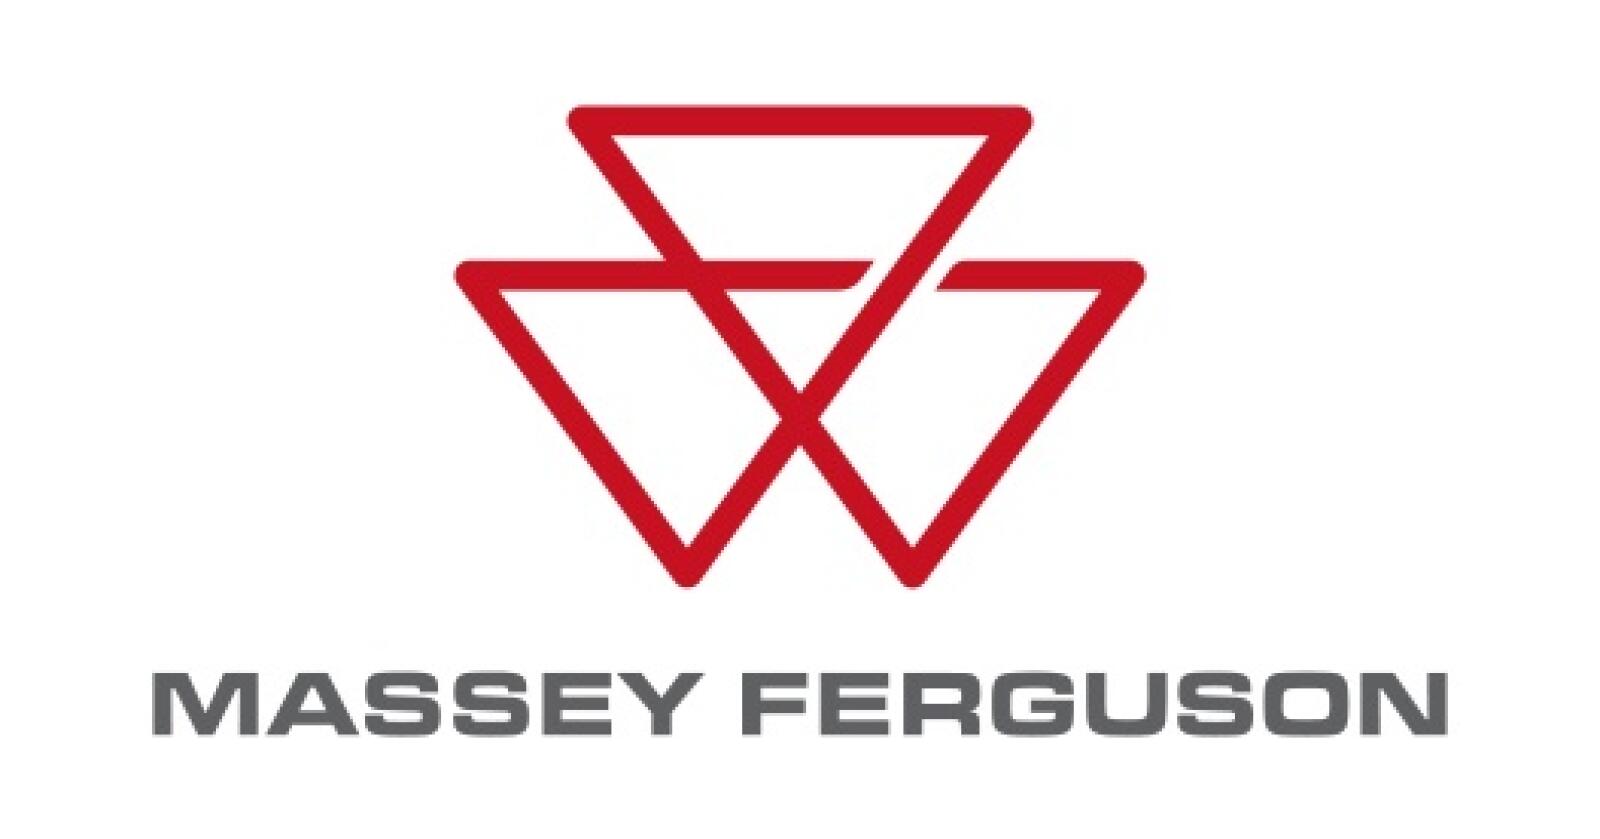 Oppdatert: Massey Ferguson er 175 år, og oppgraderer logoen sin.